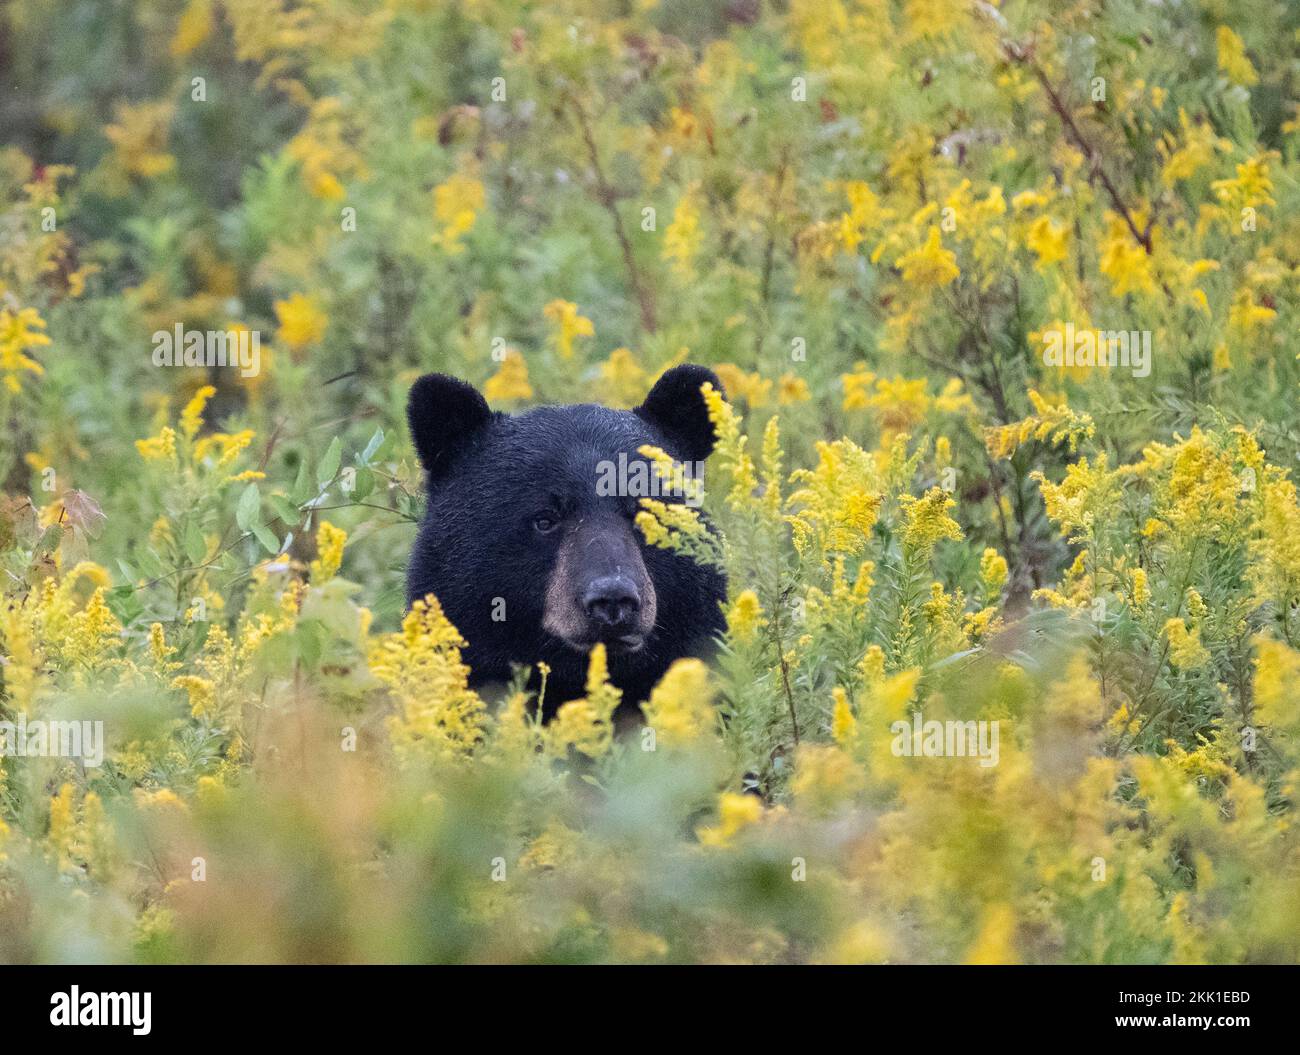 Amerikanischer Schwarzbär (Ursus americanus), der vom goldenen Stangenfeld aus in die Kamera schaut Stockfoto